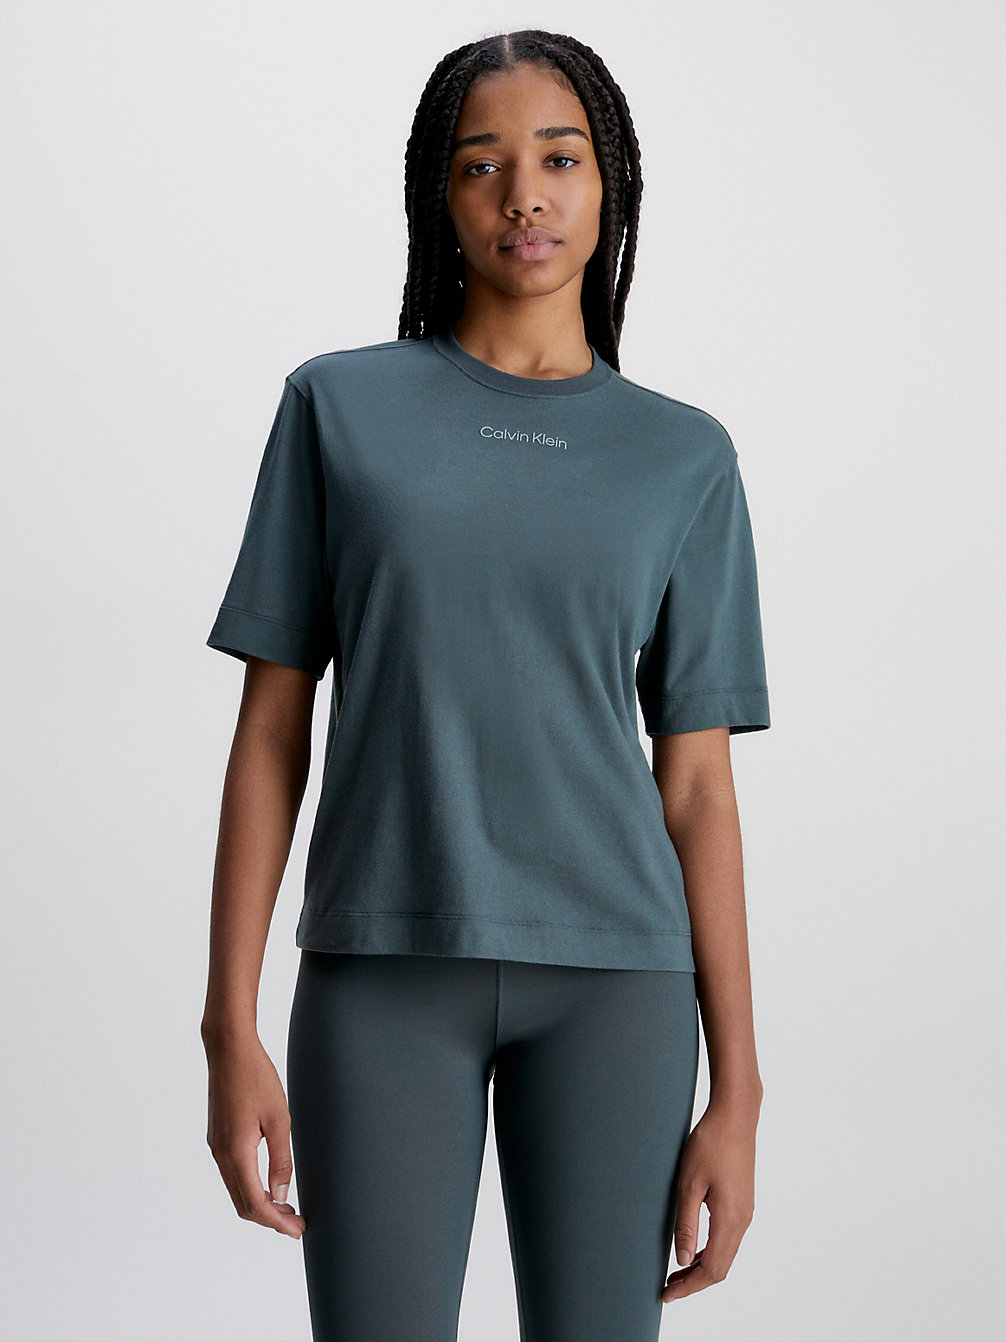 URBAN CHIC > T-Shirt Sportowy > undefined Kobiety - Calvin Klein